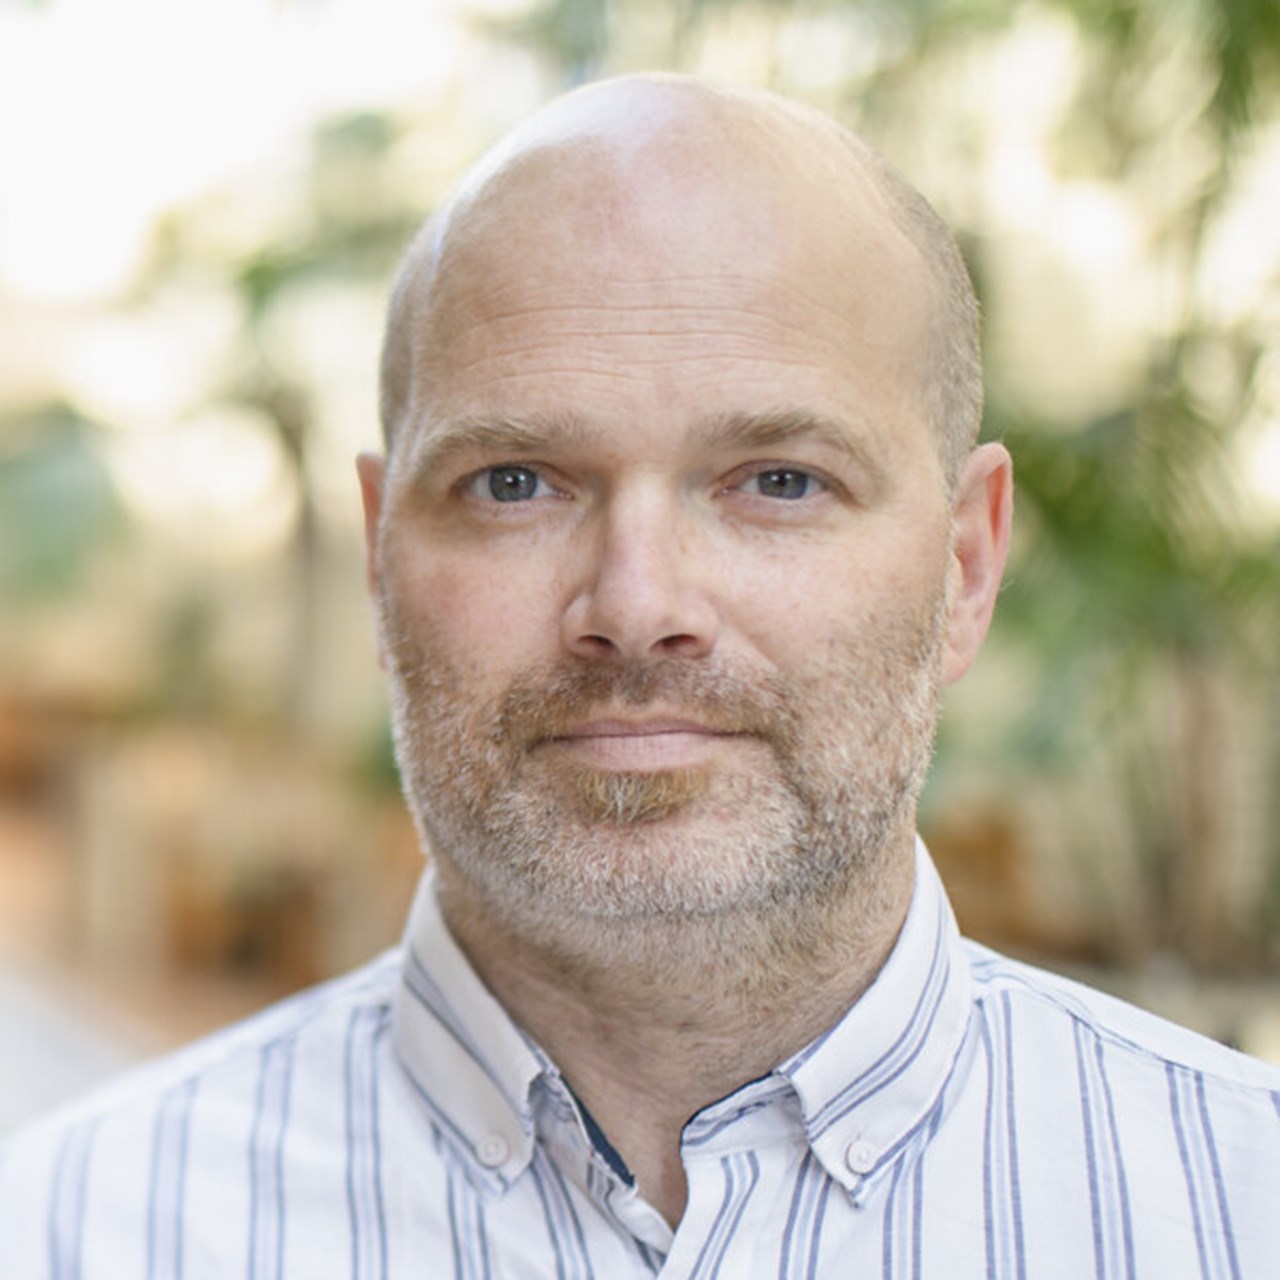 Porträttbild på Paul Davis, anknuten som universitetslektor vid Institutionen för psykologi, Umeå universitet.